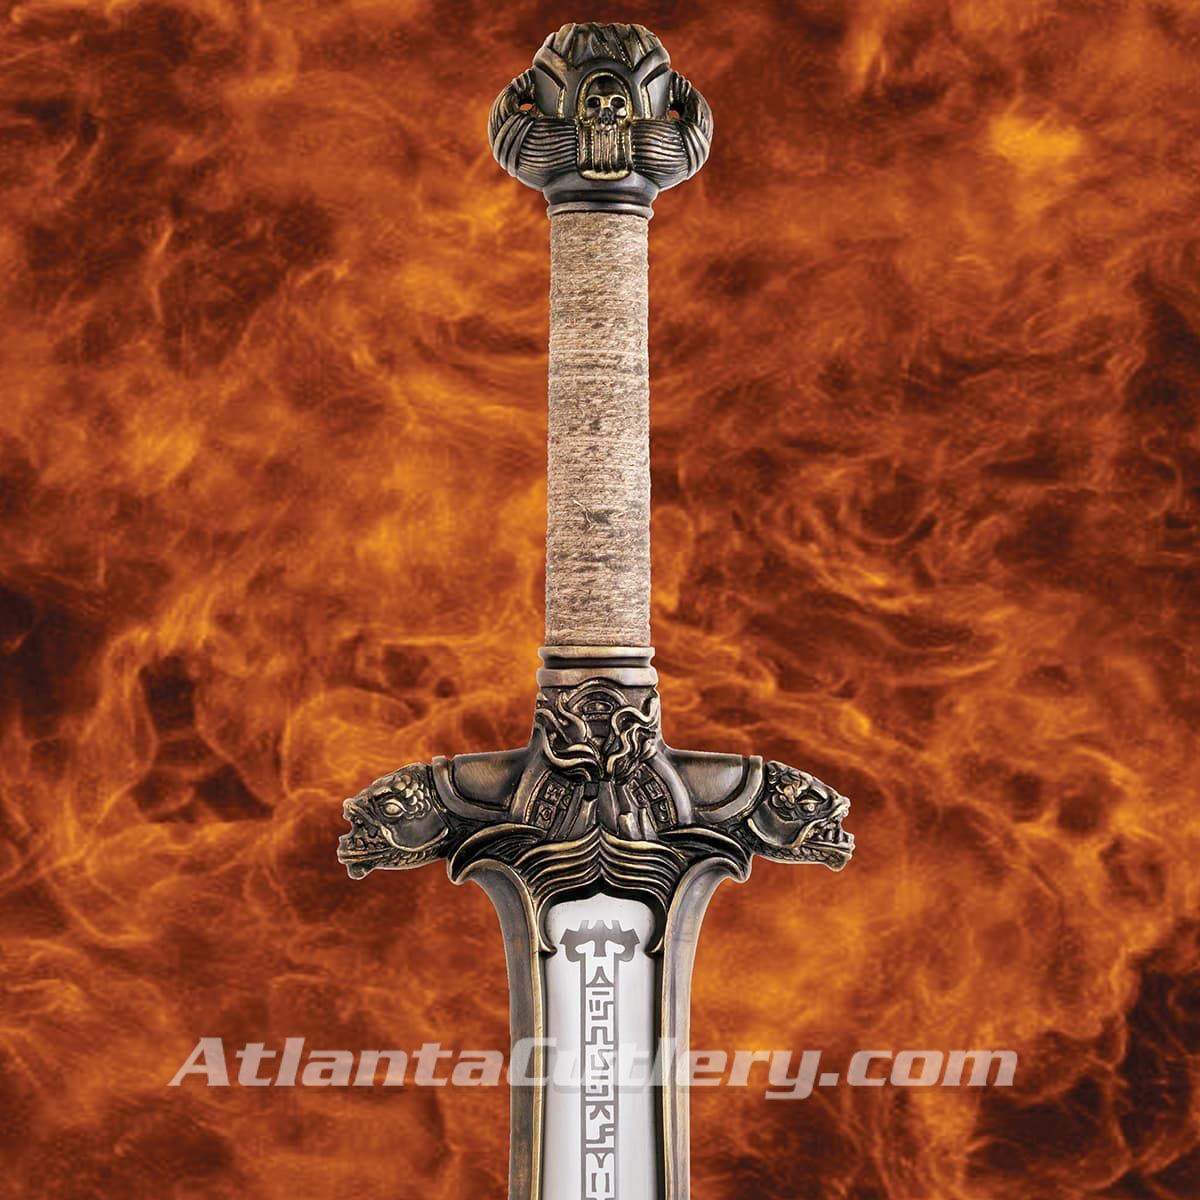 The Atlantean Sword from Conan the Barbarian